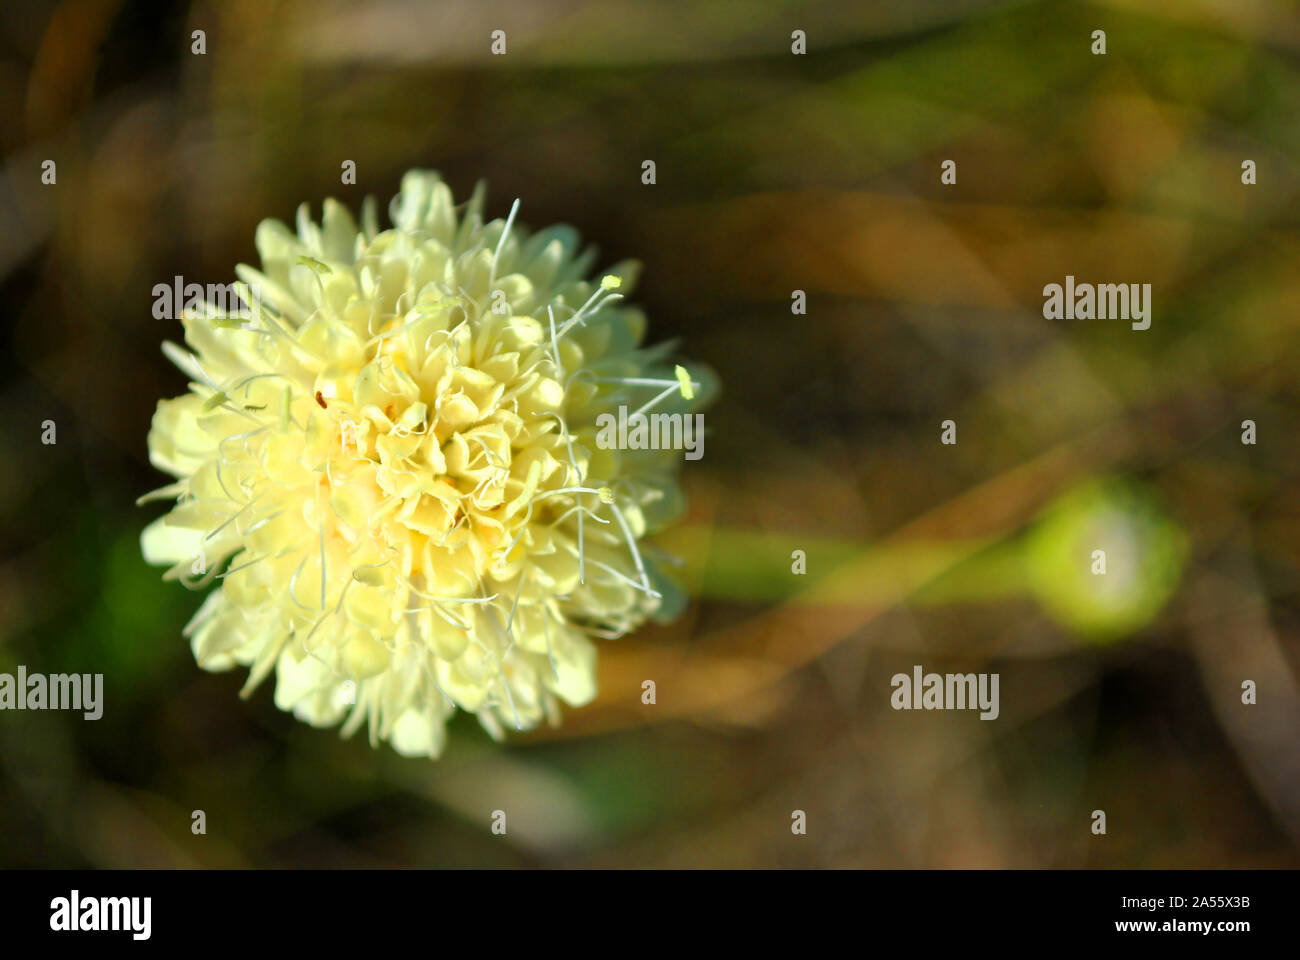 Cephalaria fiore bianco blooming, close up macro dettaglio sulla morbida erba sfocato sfondo, vista dall'alto Foto Stock